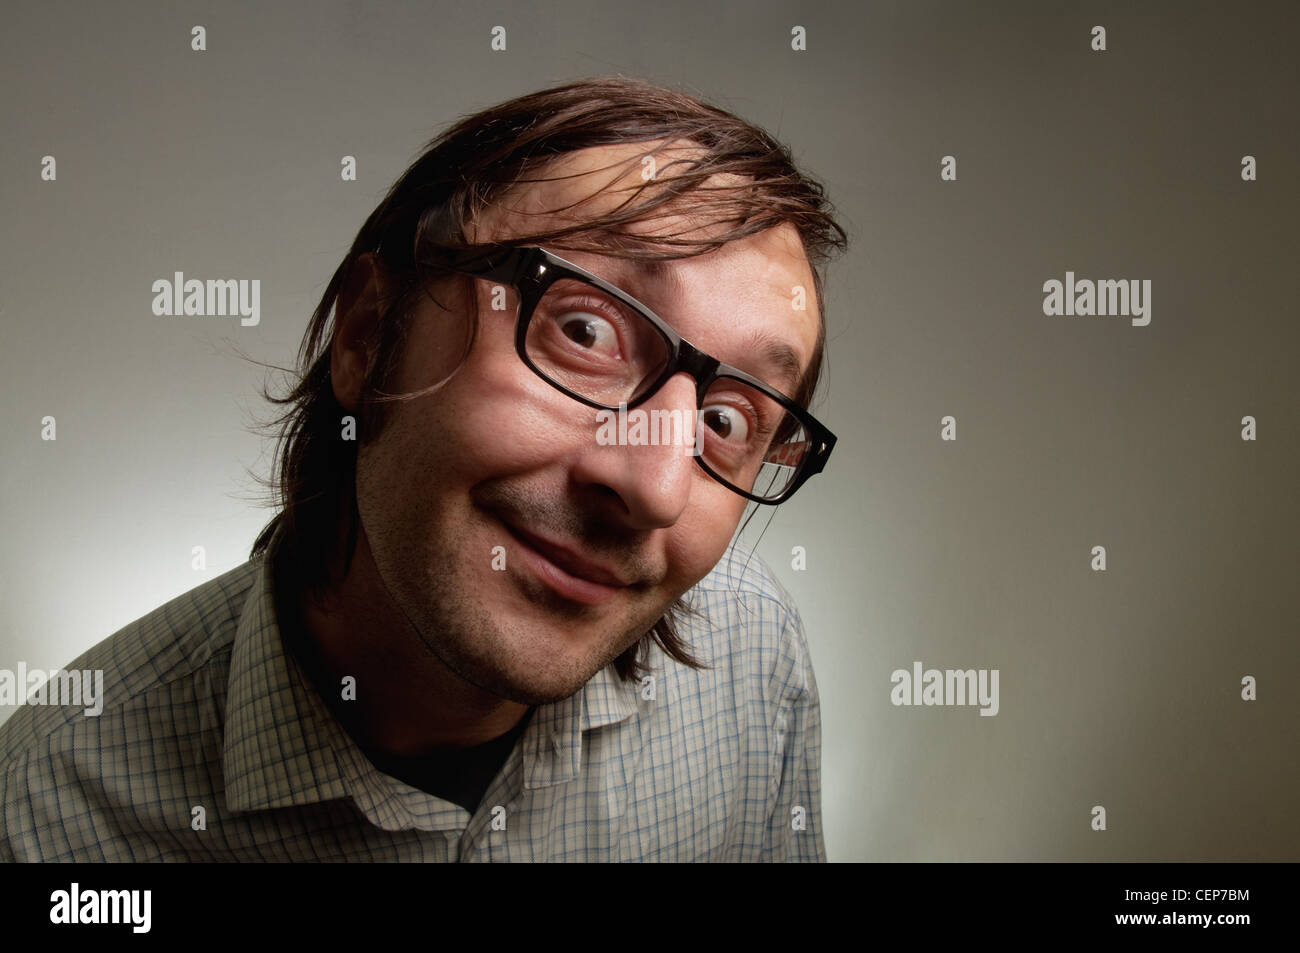 Grosse tête homme nerd portrait, cette image est un concept d'humour photo. Banque D'Images